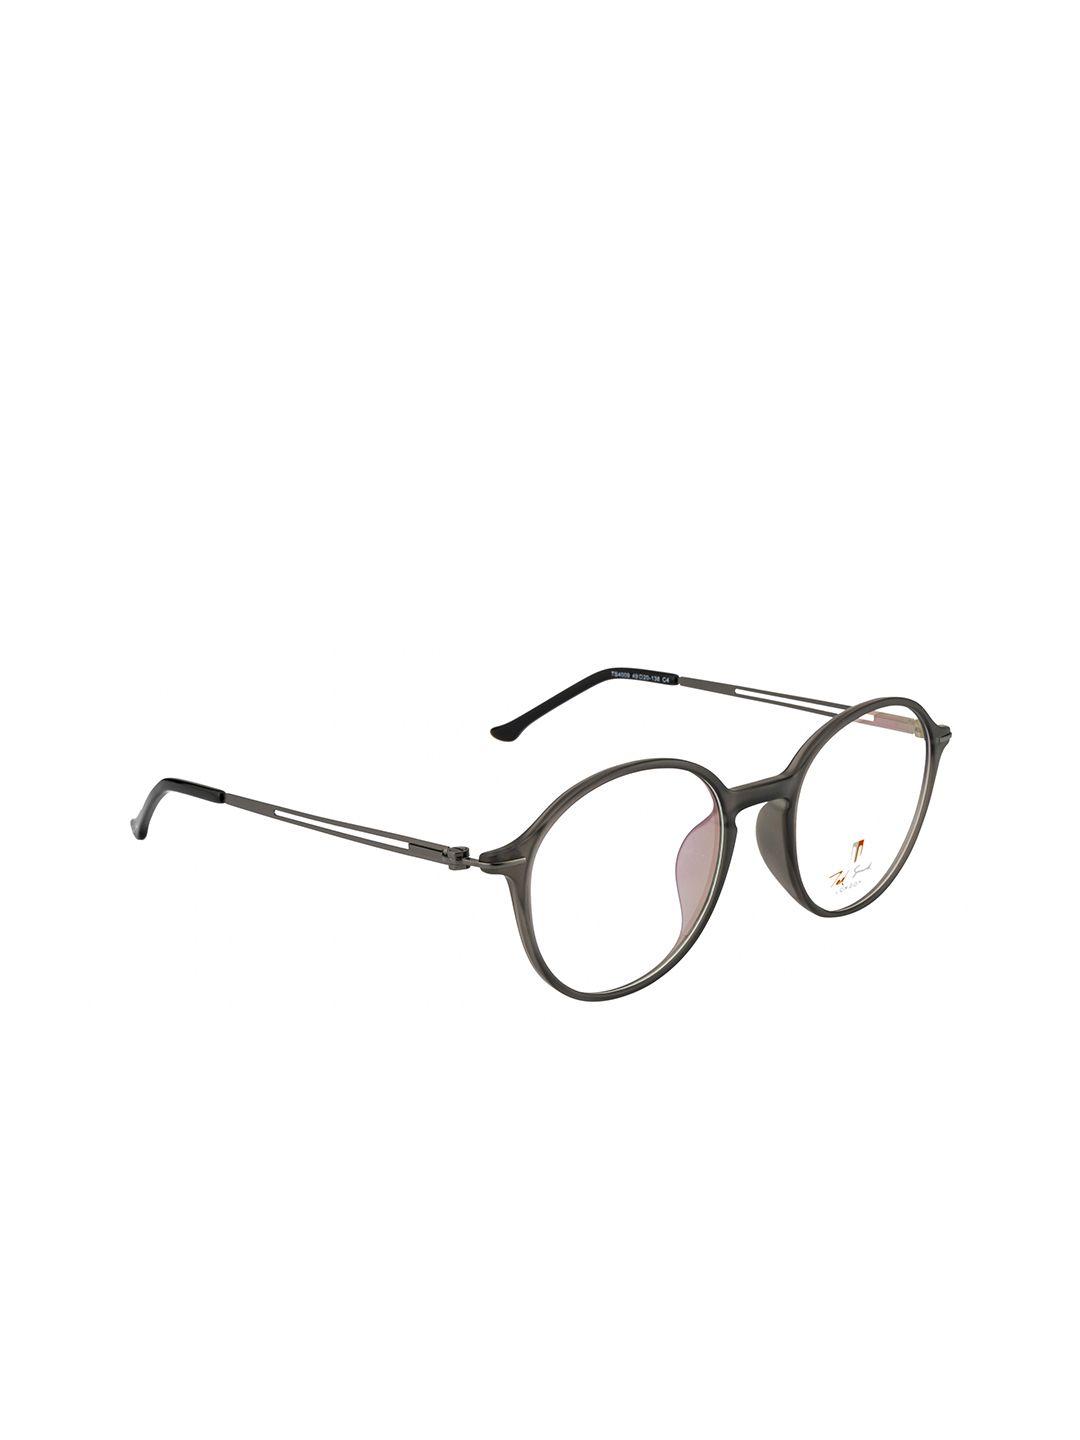 ted smith unisex grey full rim round frames eyeglasses